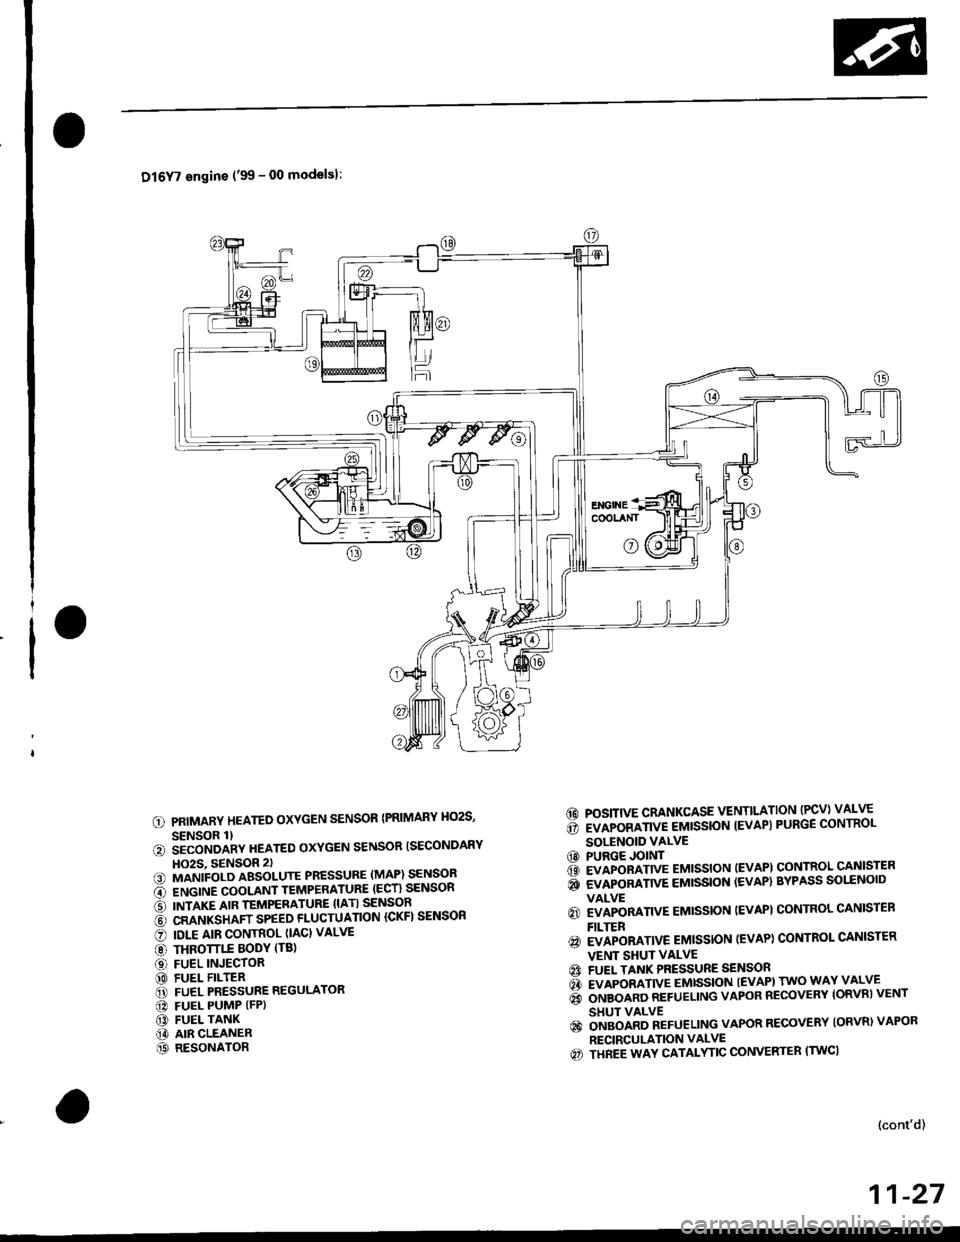 HONDA CIVIC 1997 6.G User Guide Dl6Y7 engins (99 - 00 modelsl:
PRIMARY HEATED OXYGEN SENSOR {PRIMARY HO2S,
SENSOR 1)iiconoanv neareo oxYGEN sENsoR ISECoNDARY
HO2S, 9ENSOR 2)MANIFOLD ABSOLUTE PRESSURE (MAP) SENSOR
ENGINE COOLANT TEM